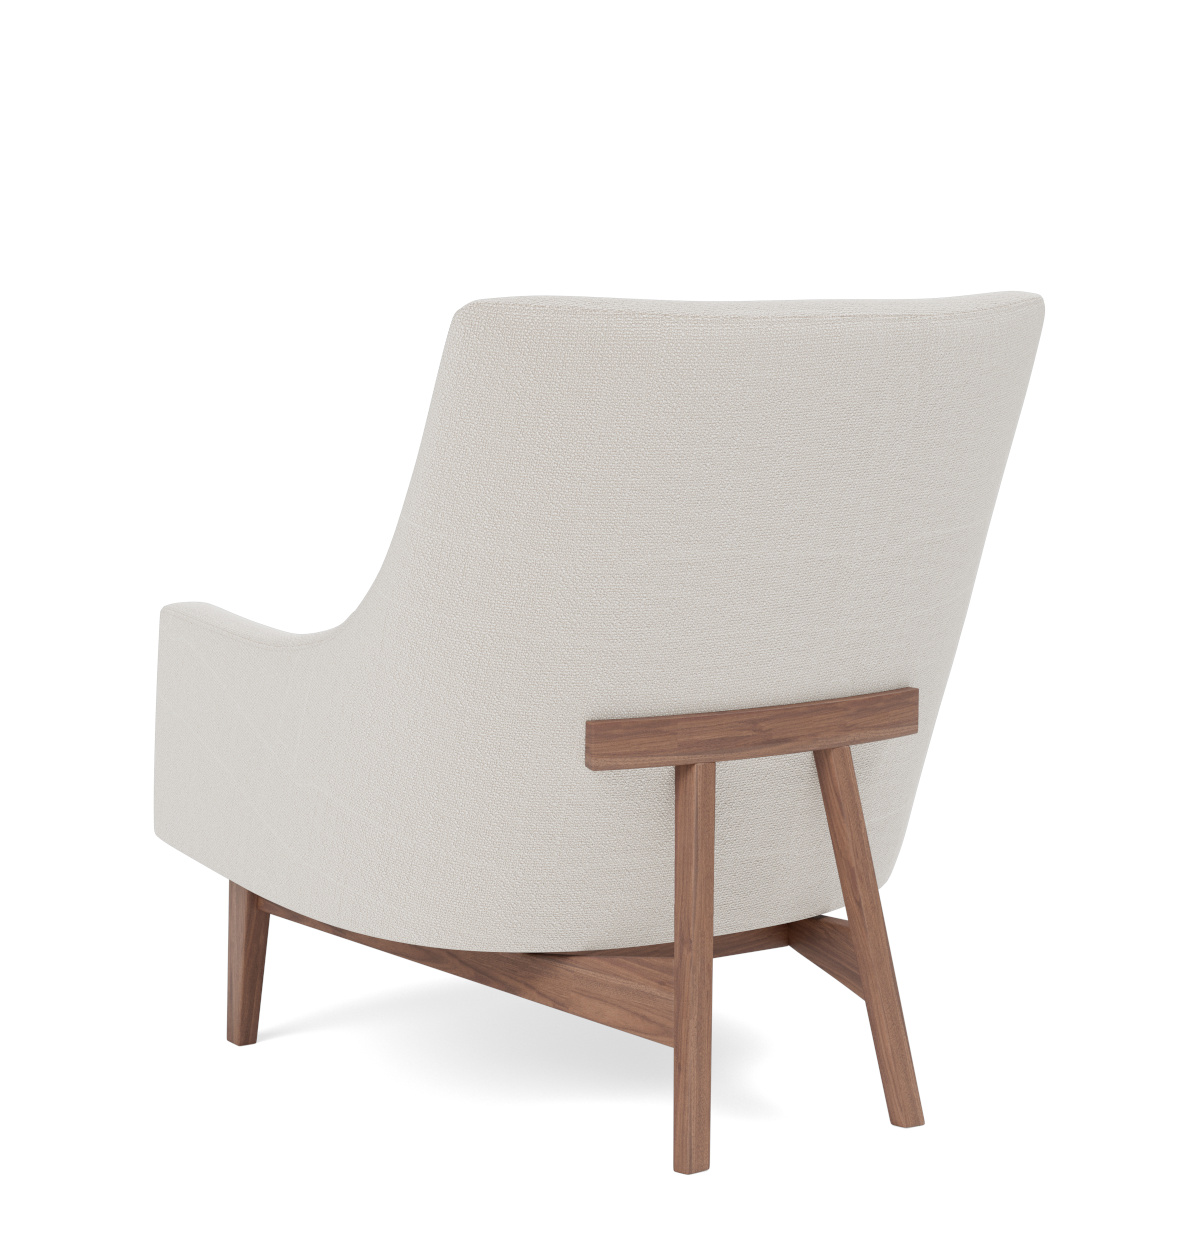 A-Chair Wood Base, eiche lackiert / re-wool 128